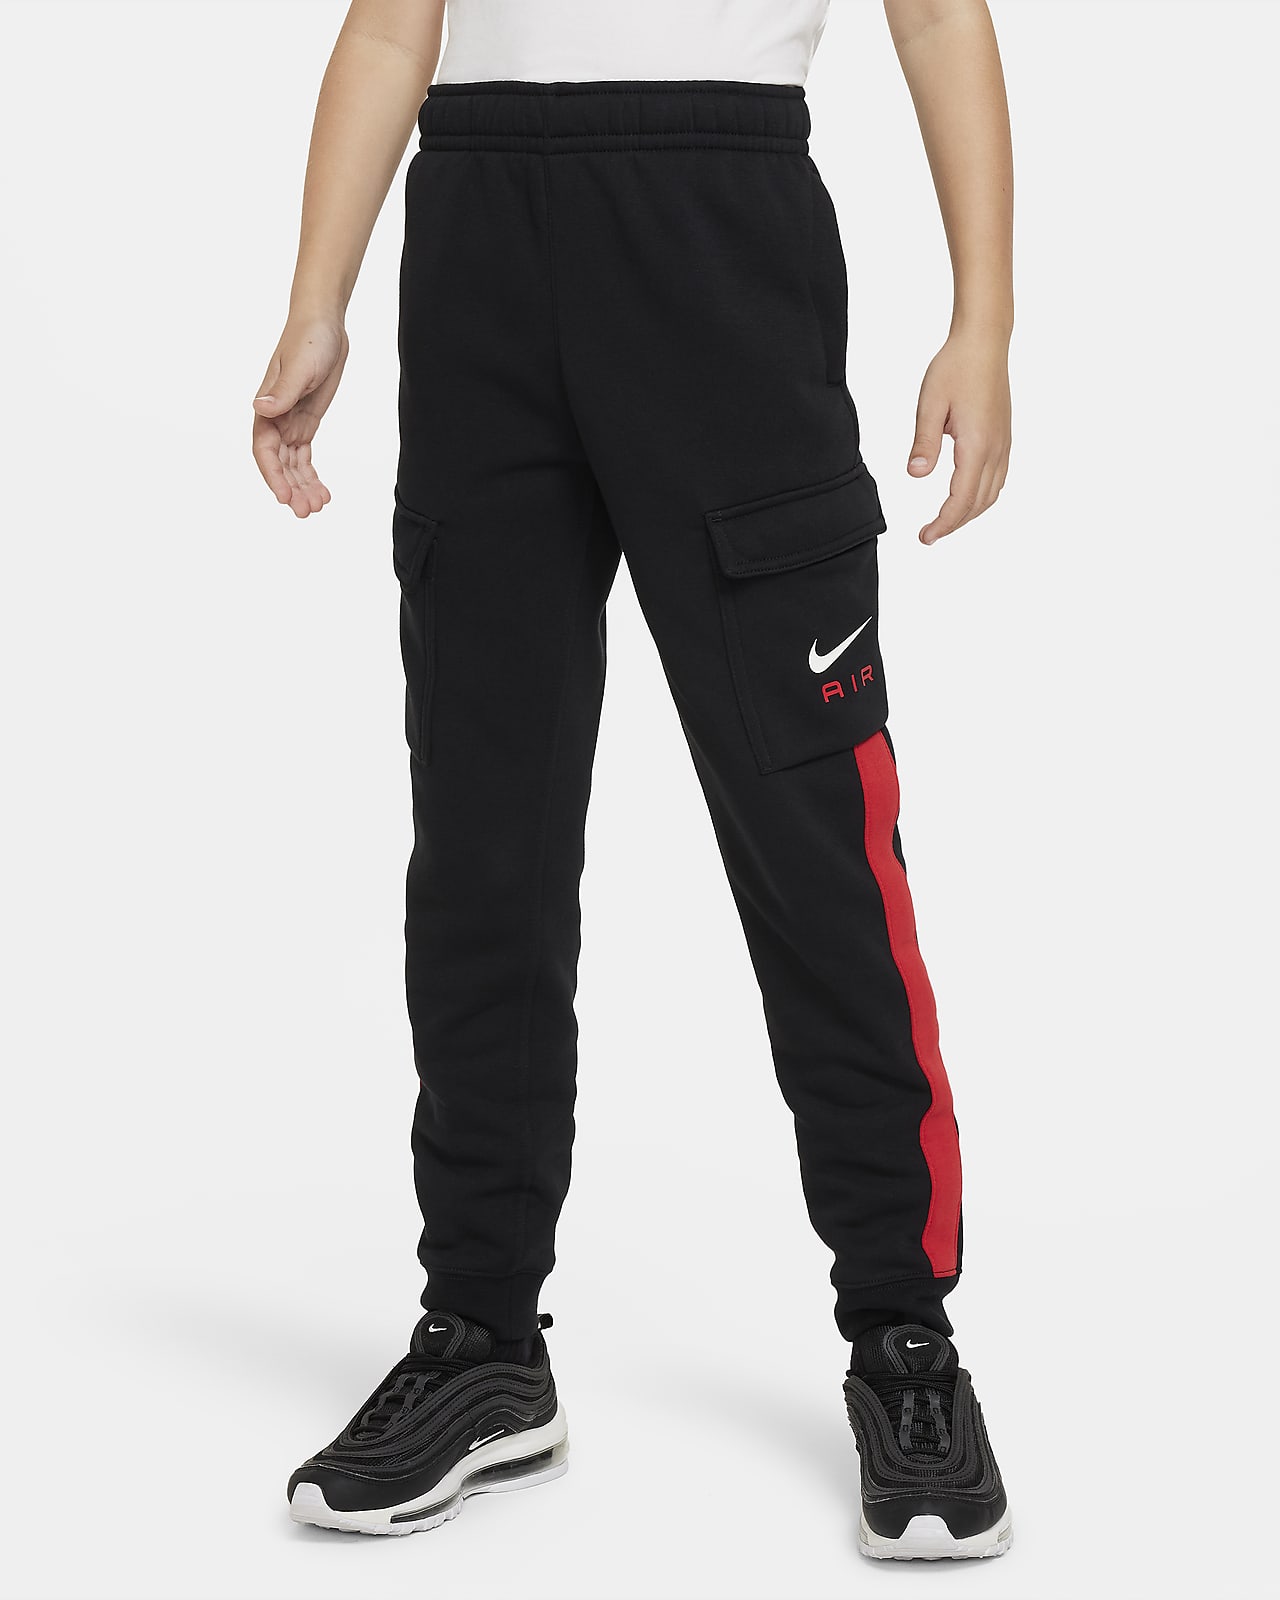 Nike Air Pantalons cargo de teixit Fleece - Nen/a